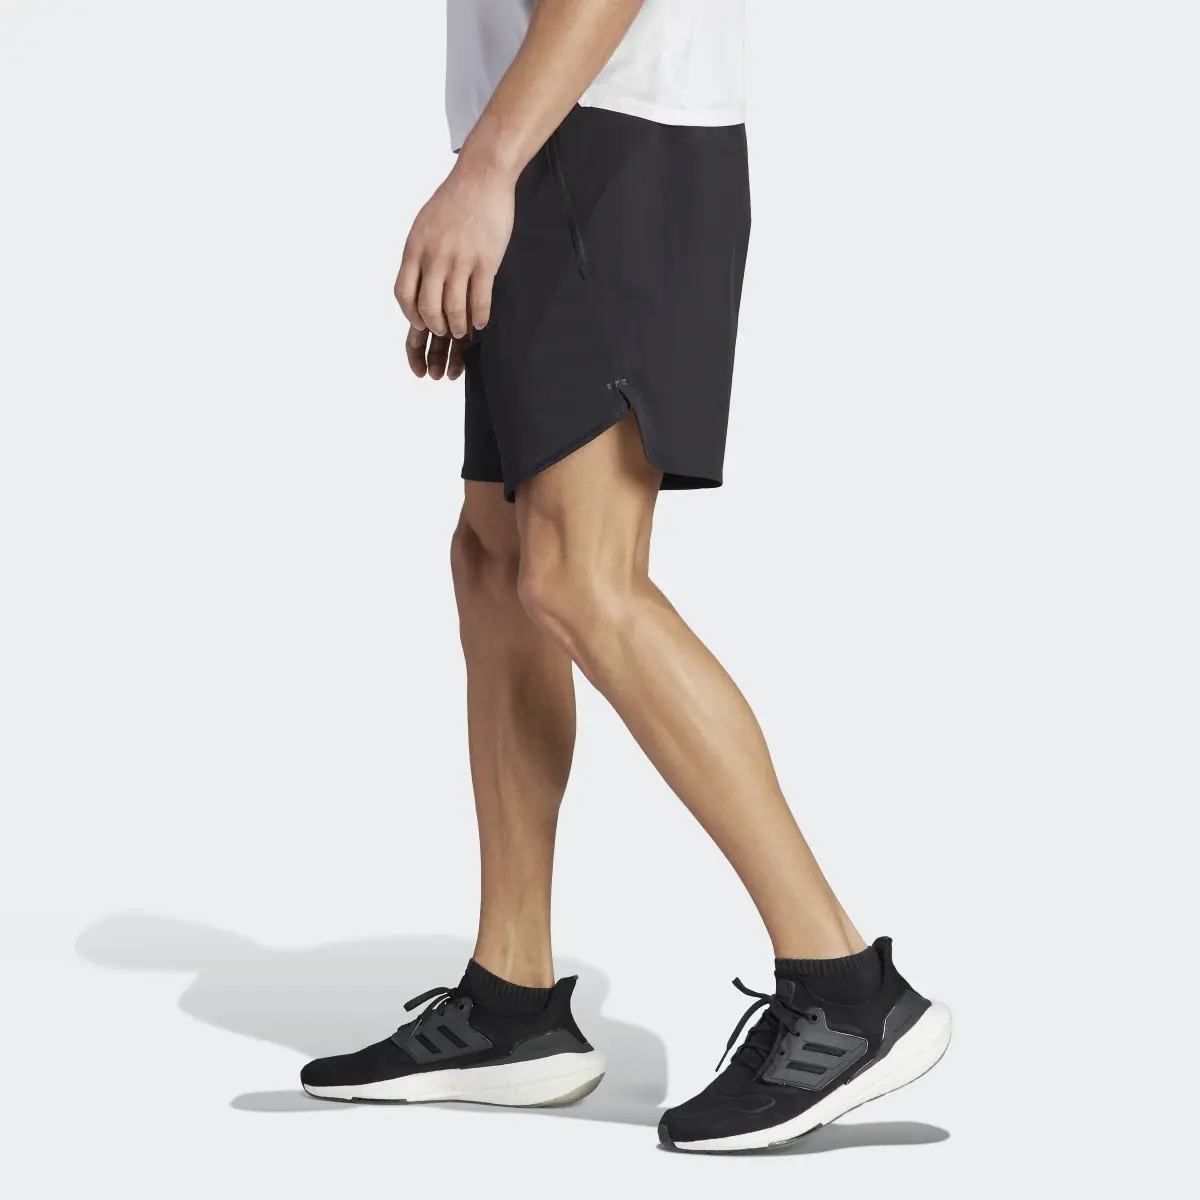 Adidas Designed 4 Training CORDURA Workout Shorts. 2